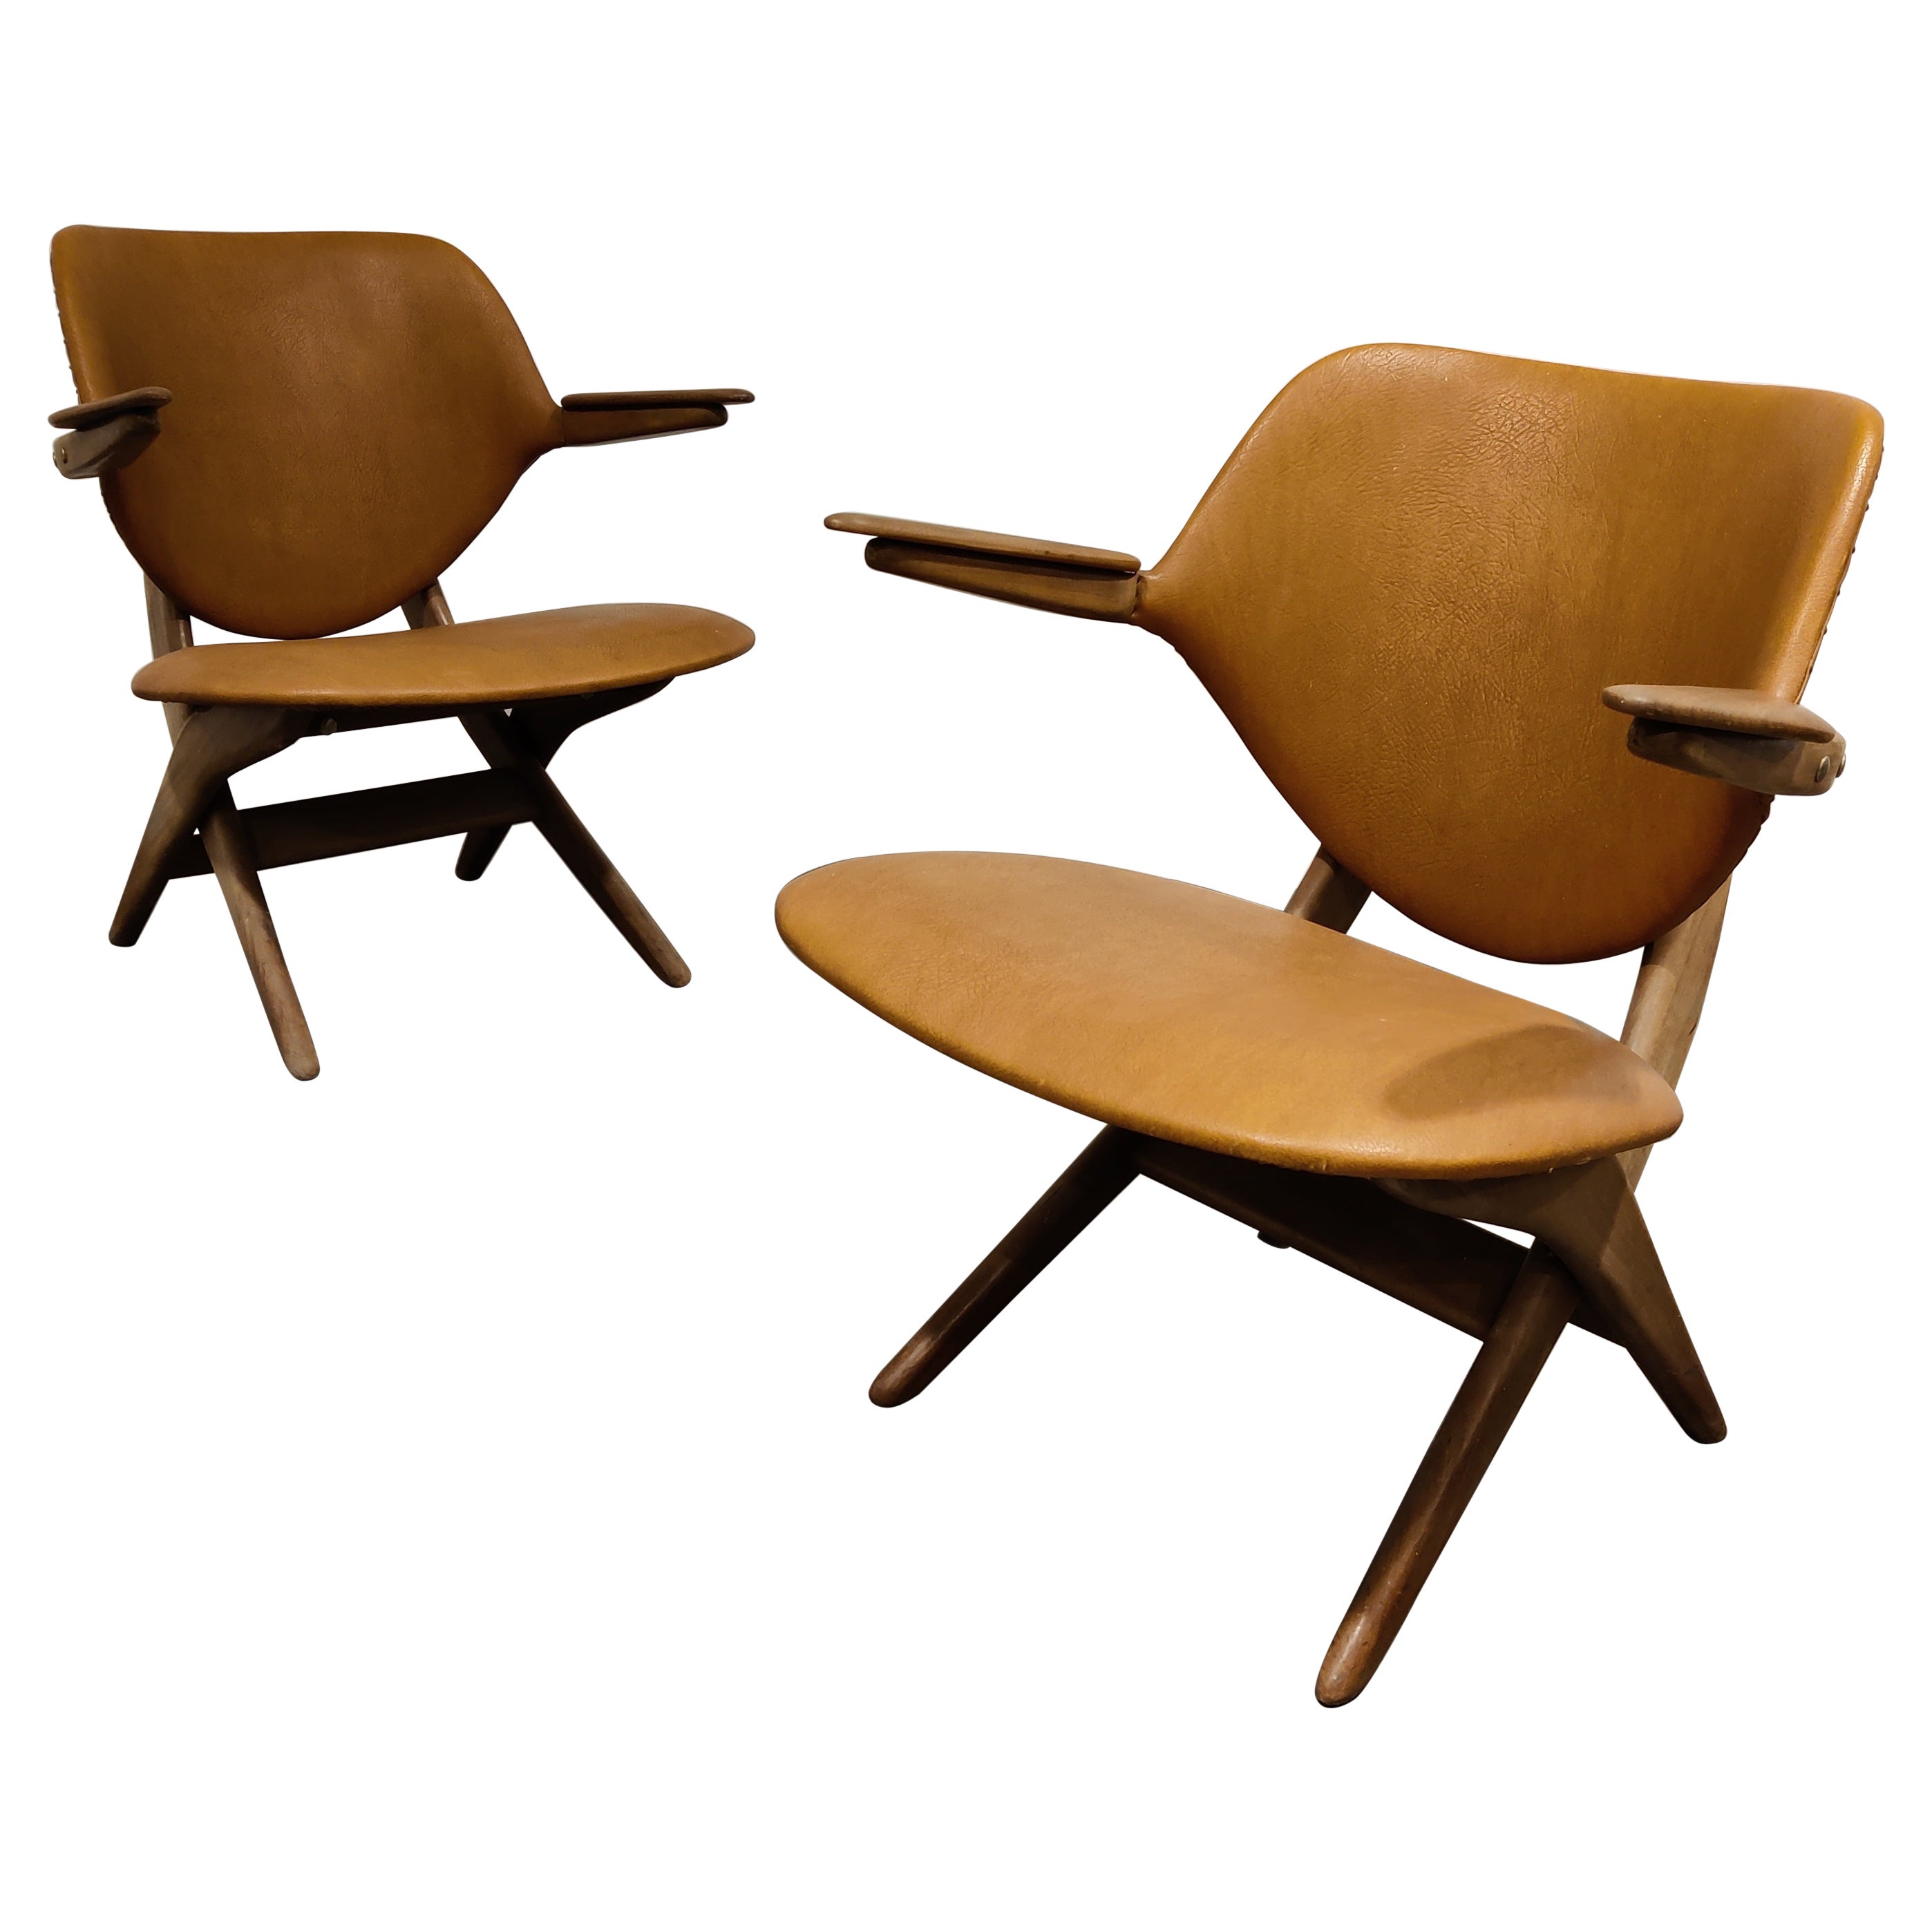 Pair of Pelican armchairs by Louis Van Teeffelen for Wébé, 1960s